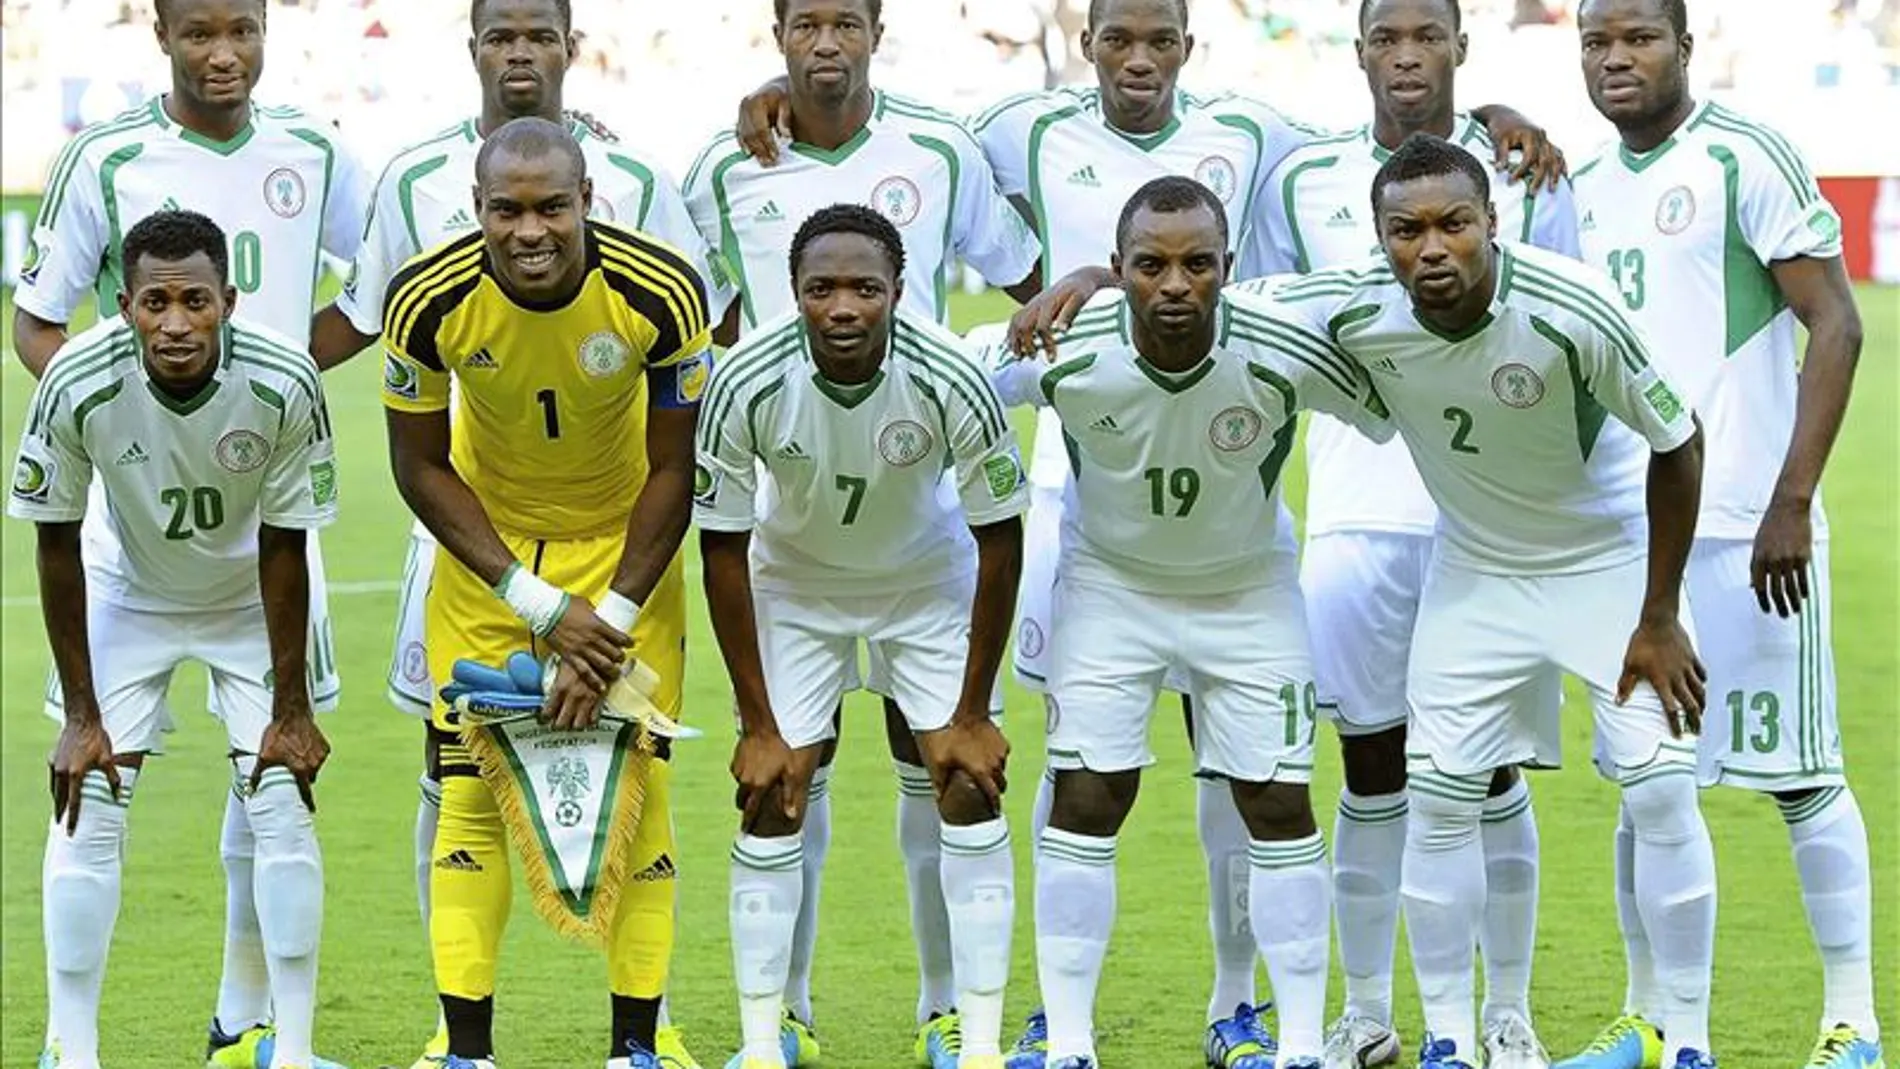 La selección de Nigeria, antes del partido de la Copa Confederaciones contra Tahití jugado en el pasado mes de junio